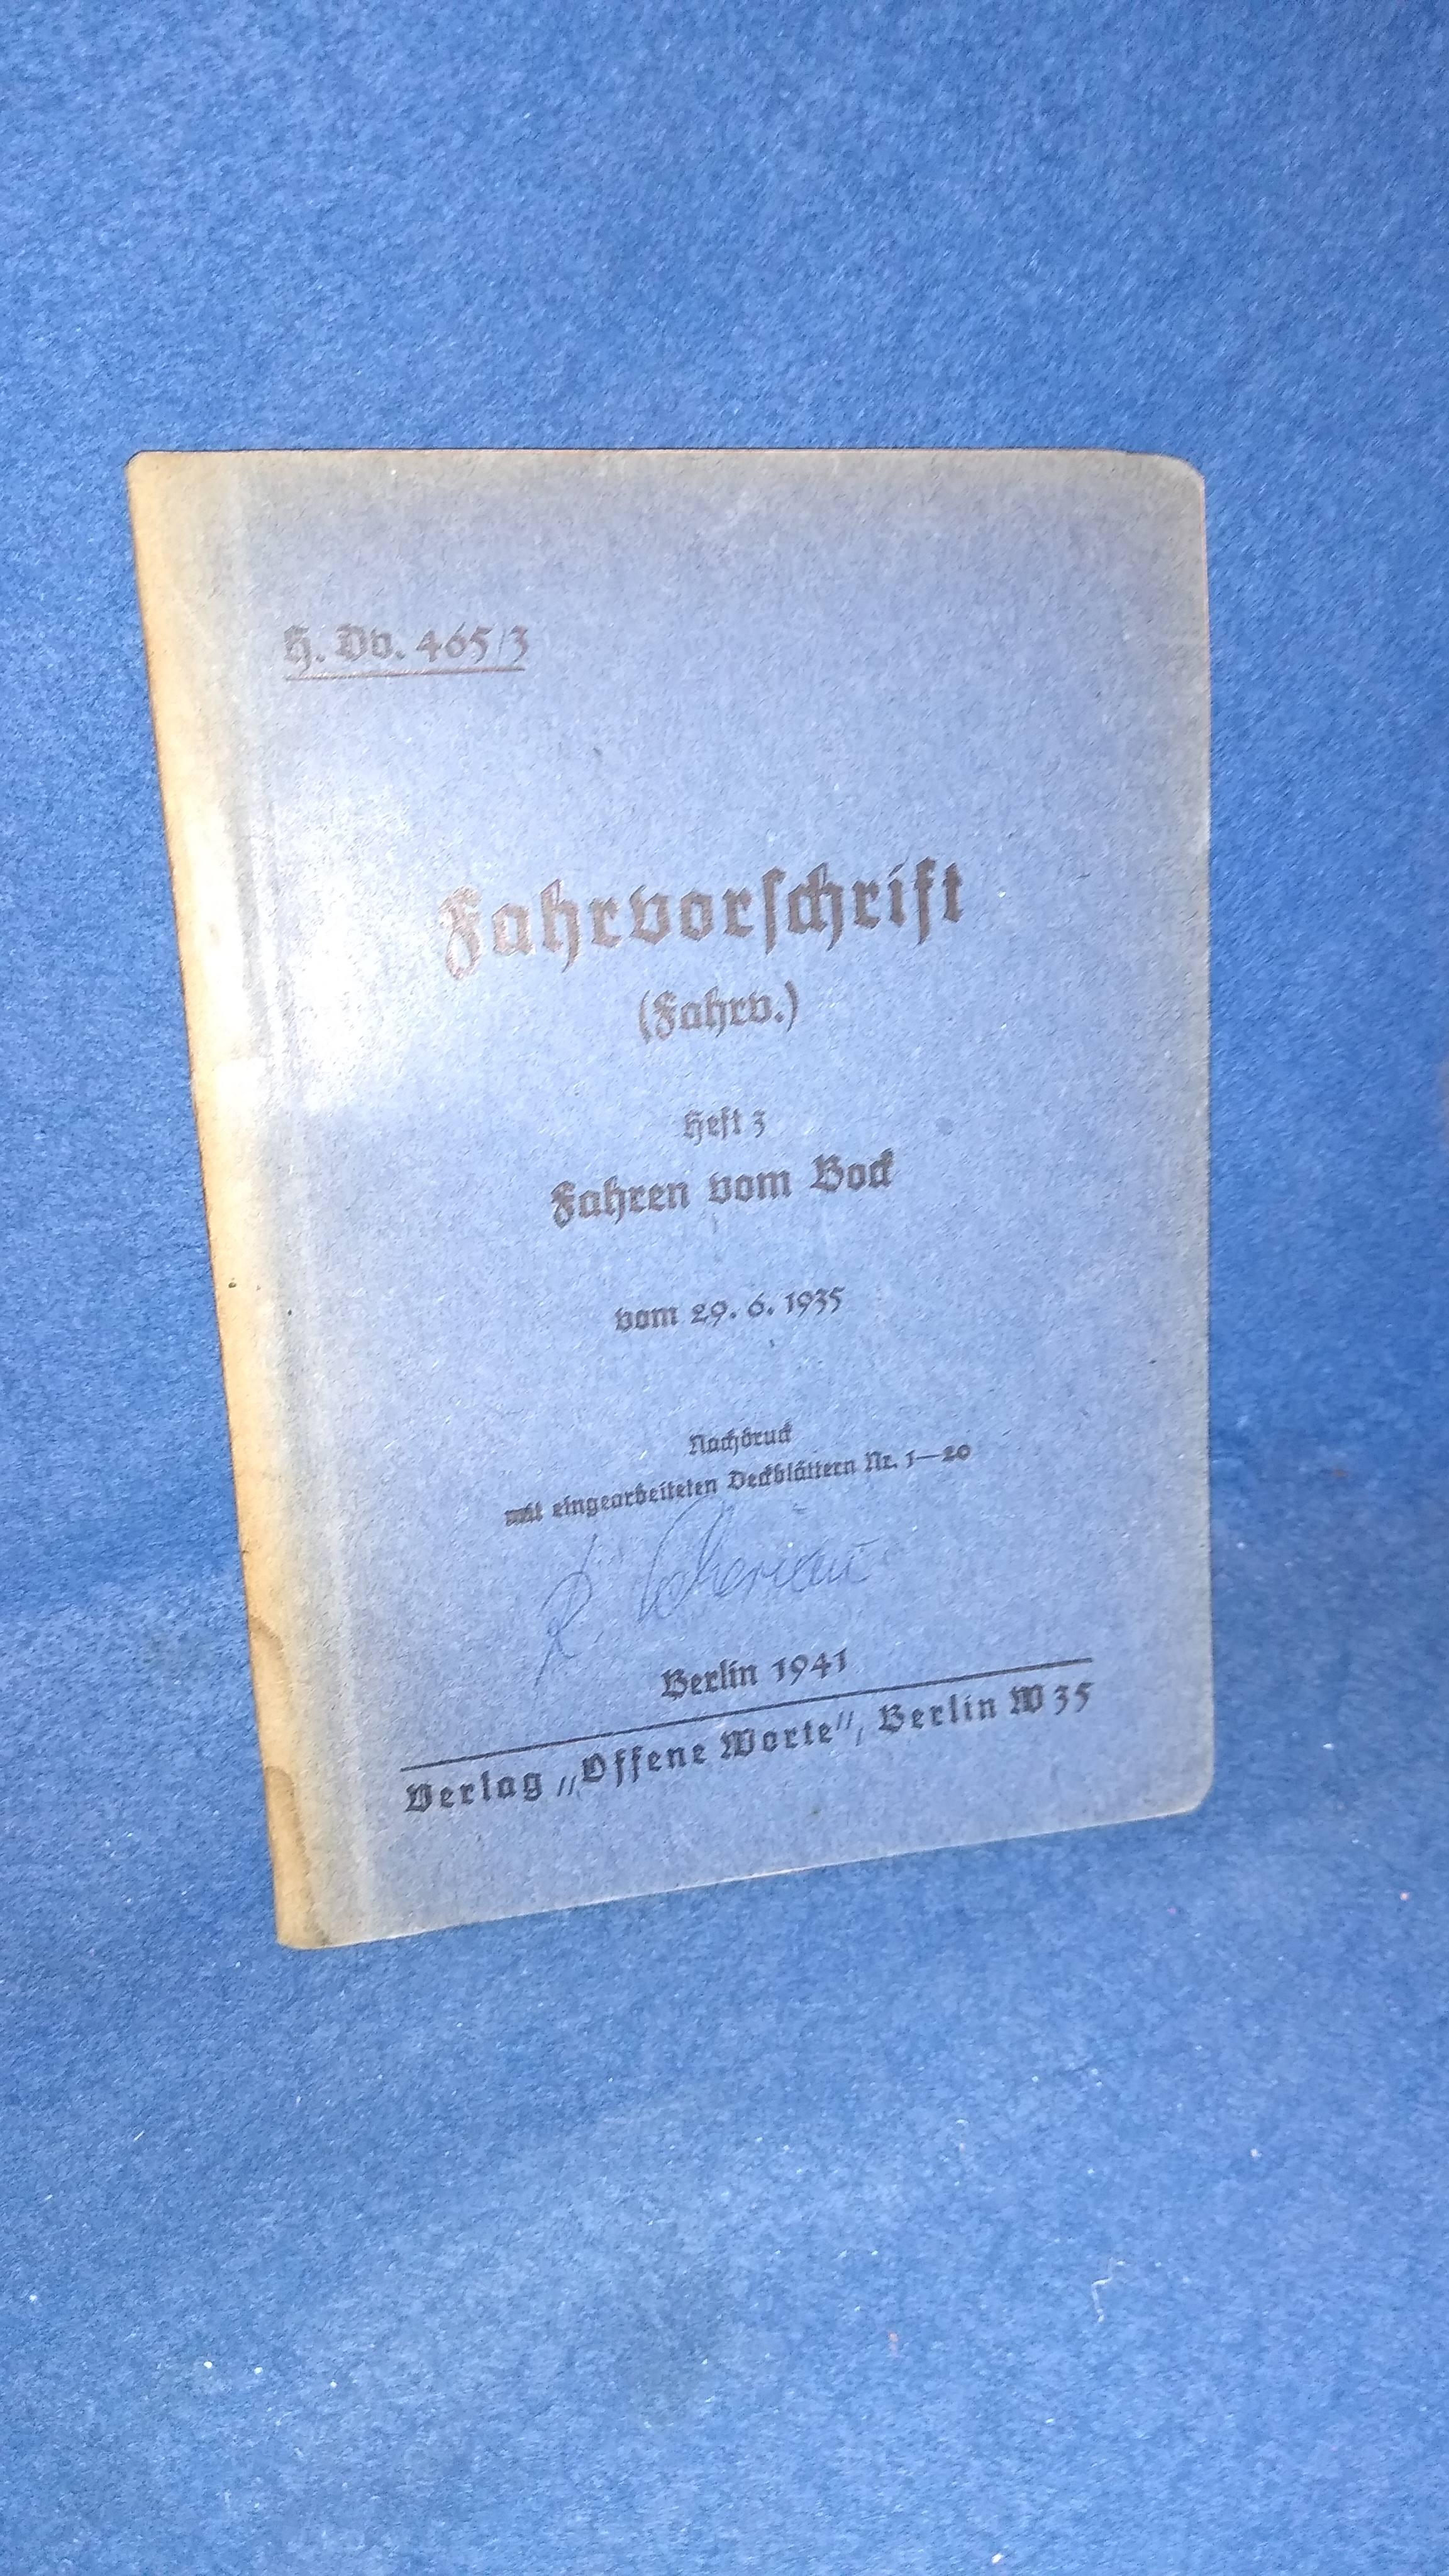 H.Dv. 465/3. Fahrvorschrift (fahrv.) Heft 3. Fahren vom Bock. Seltenes Orginal-Exemplar von 1941!